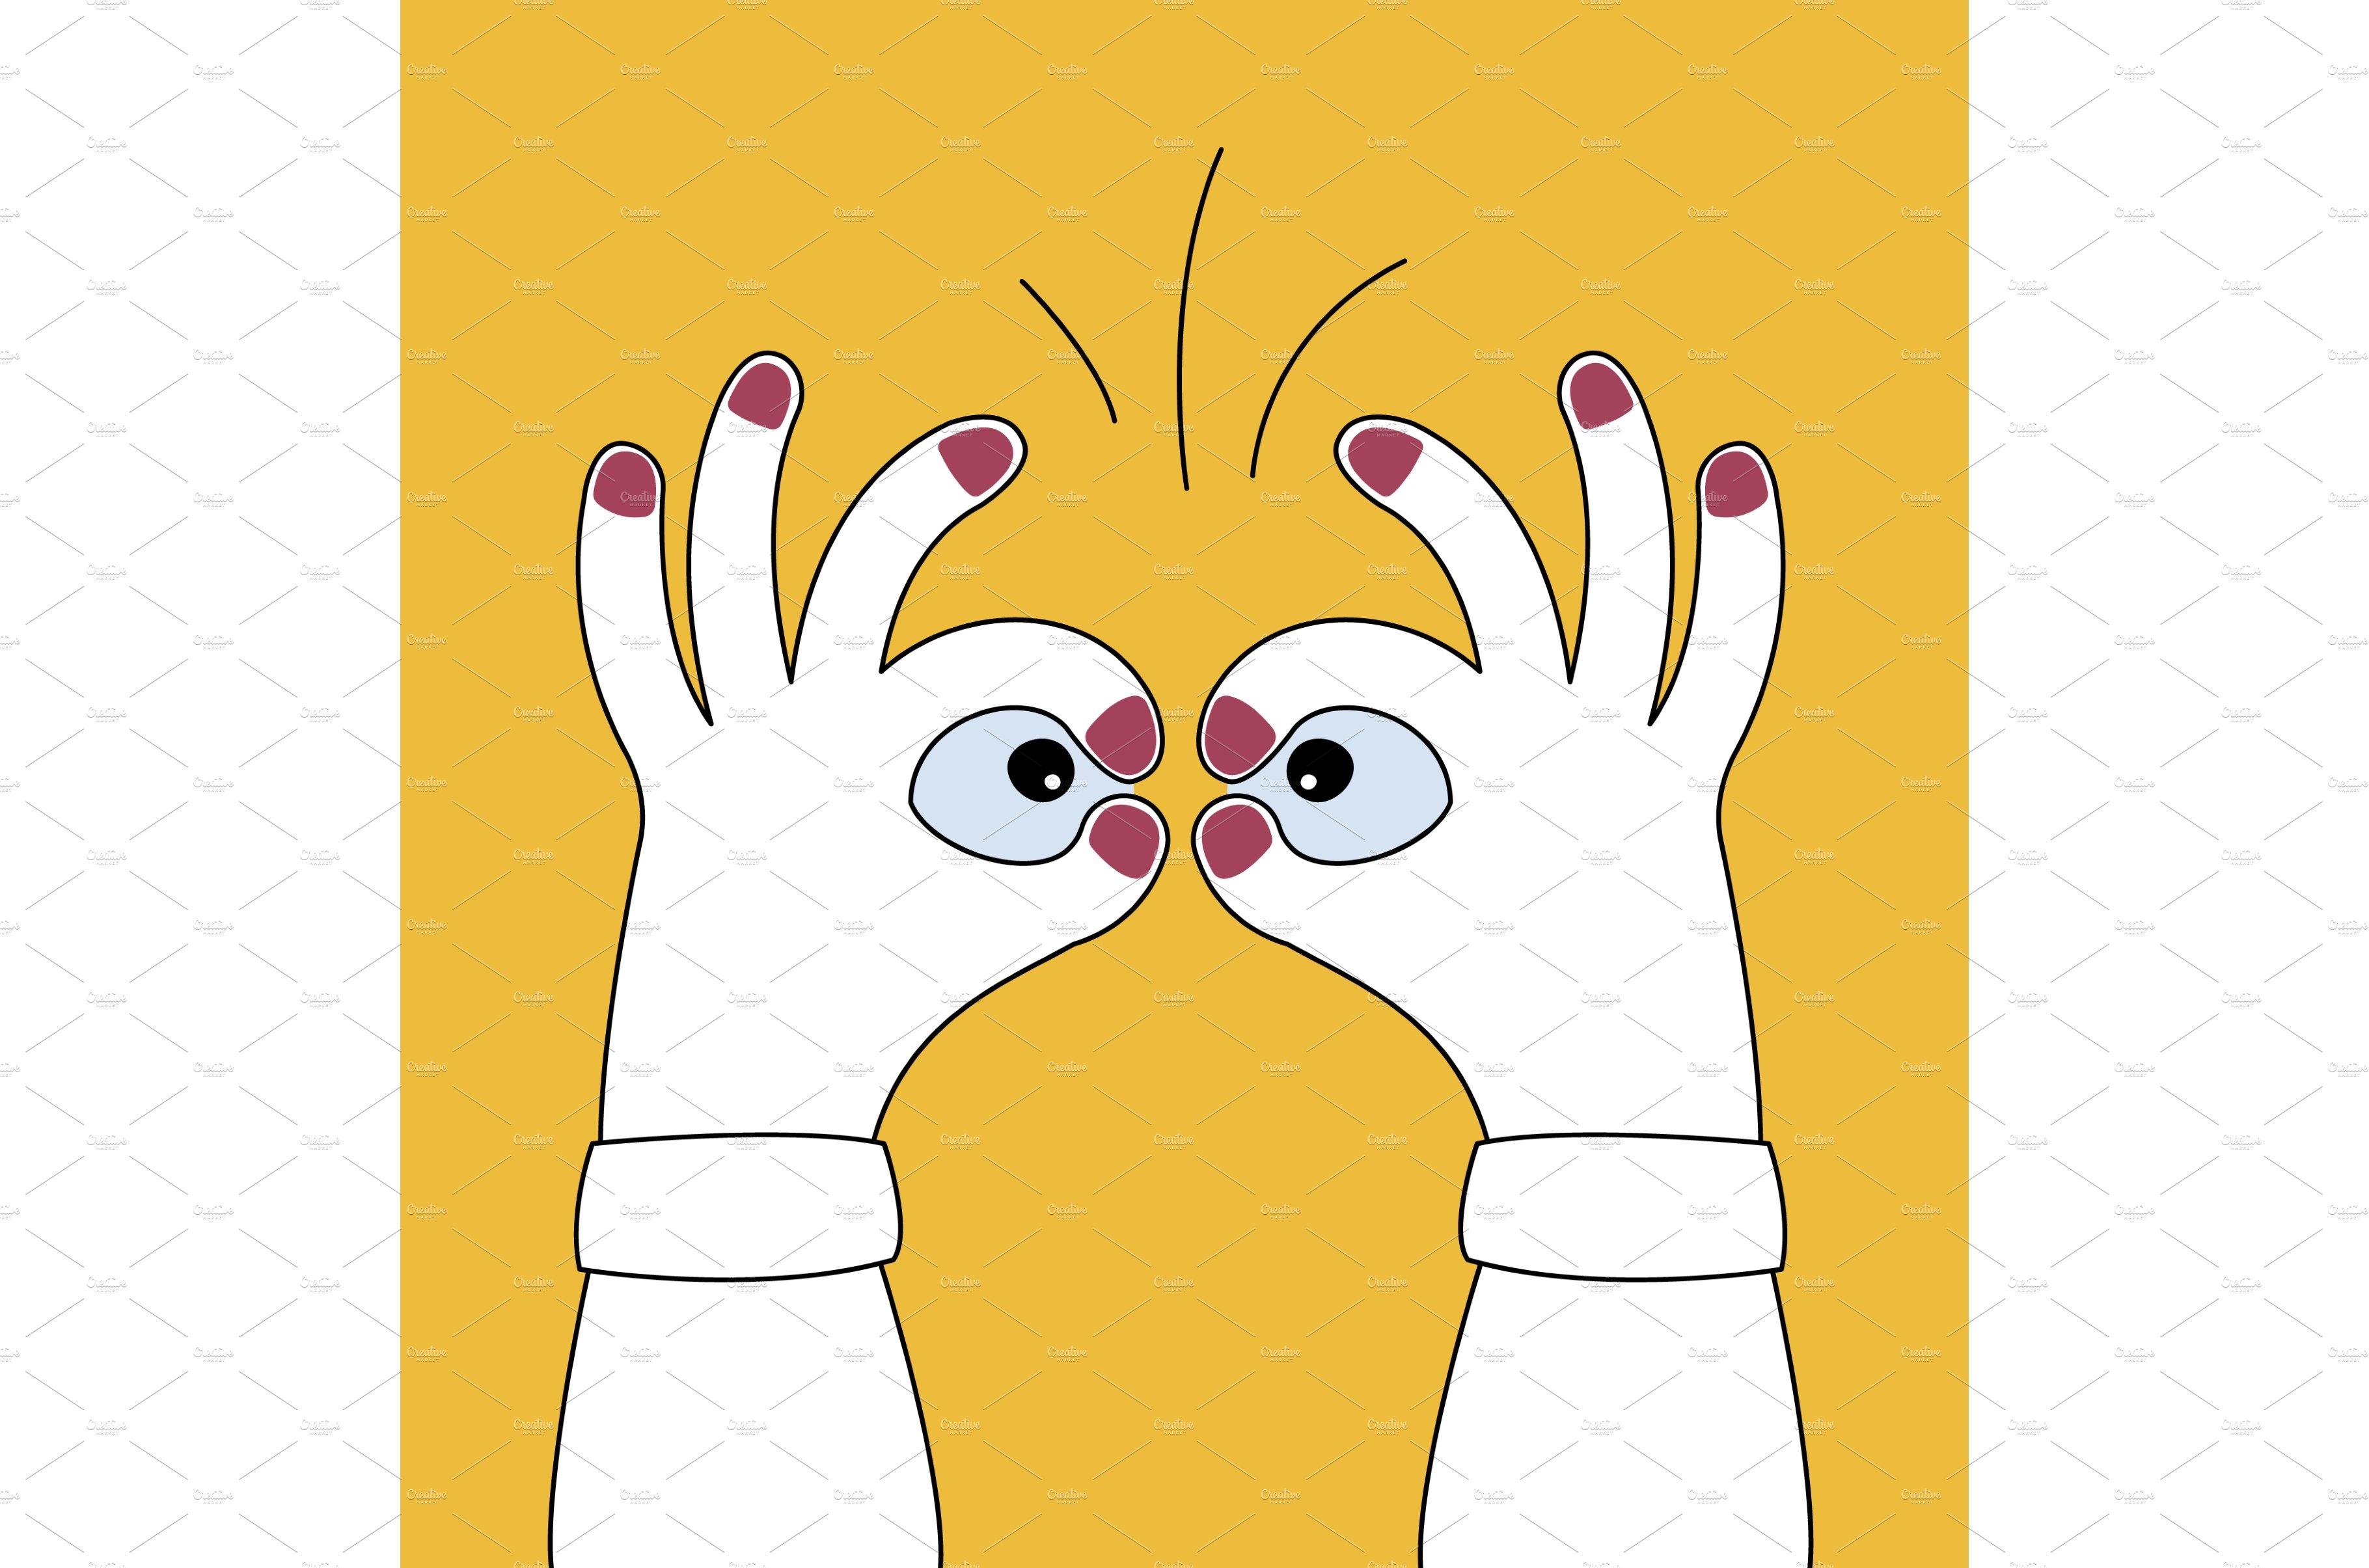 Hands depict binocular. cover image.